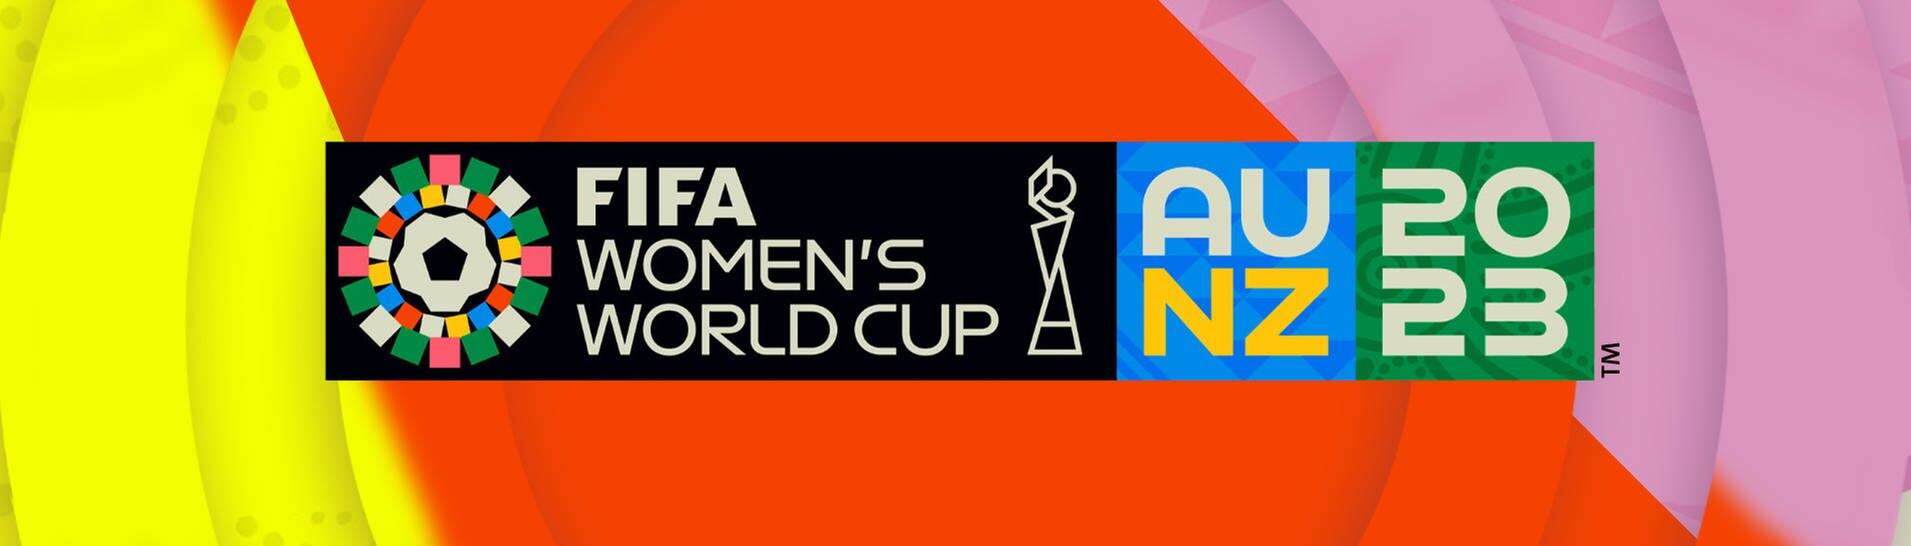 Das Logo zur FIFA Frauen WM 2023 in Australien und Neuseeland (Foto: FIFA / SWR)